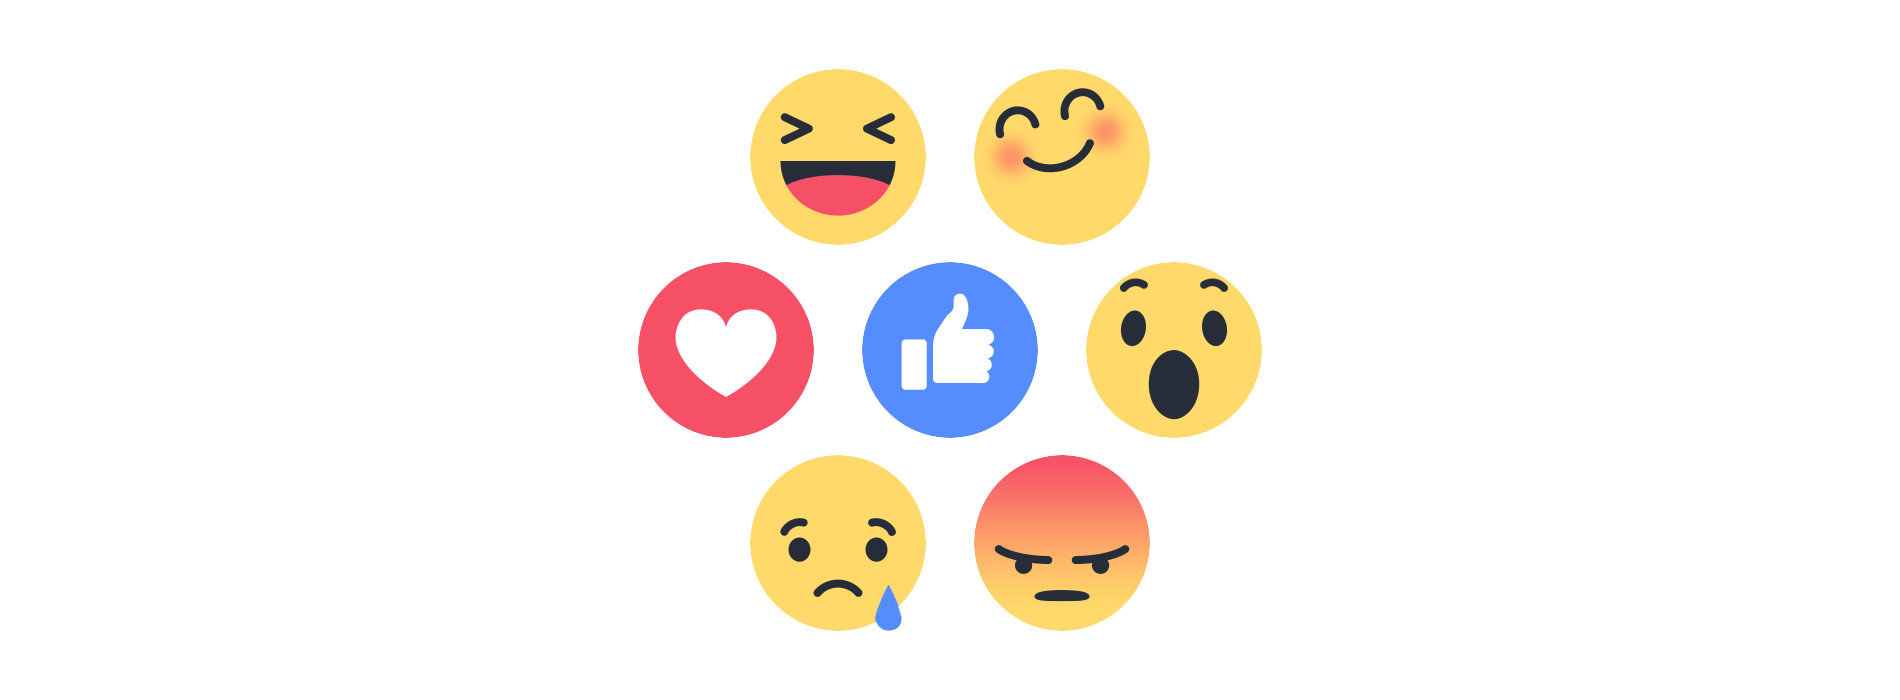 Online-Erwähnungen und Äußerungen werden jetzt dank der Facebook Reactions Analyse noch effektiver analysiert